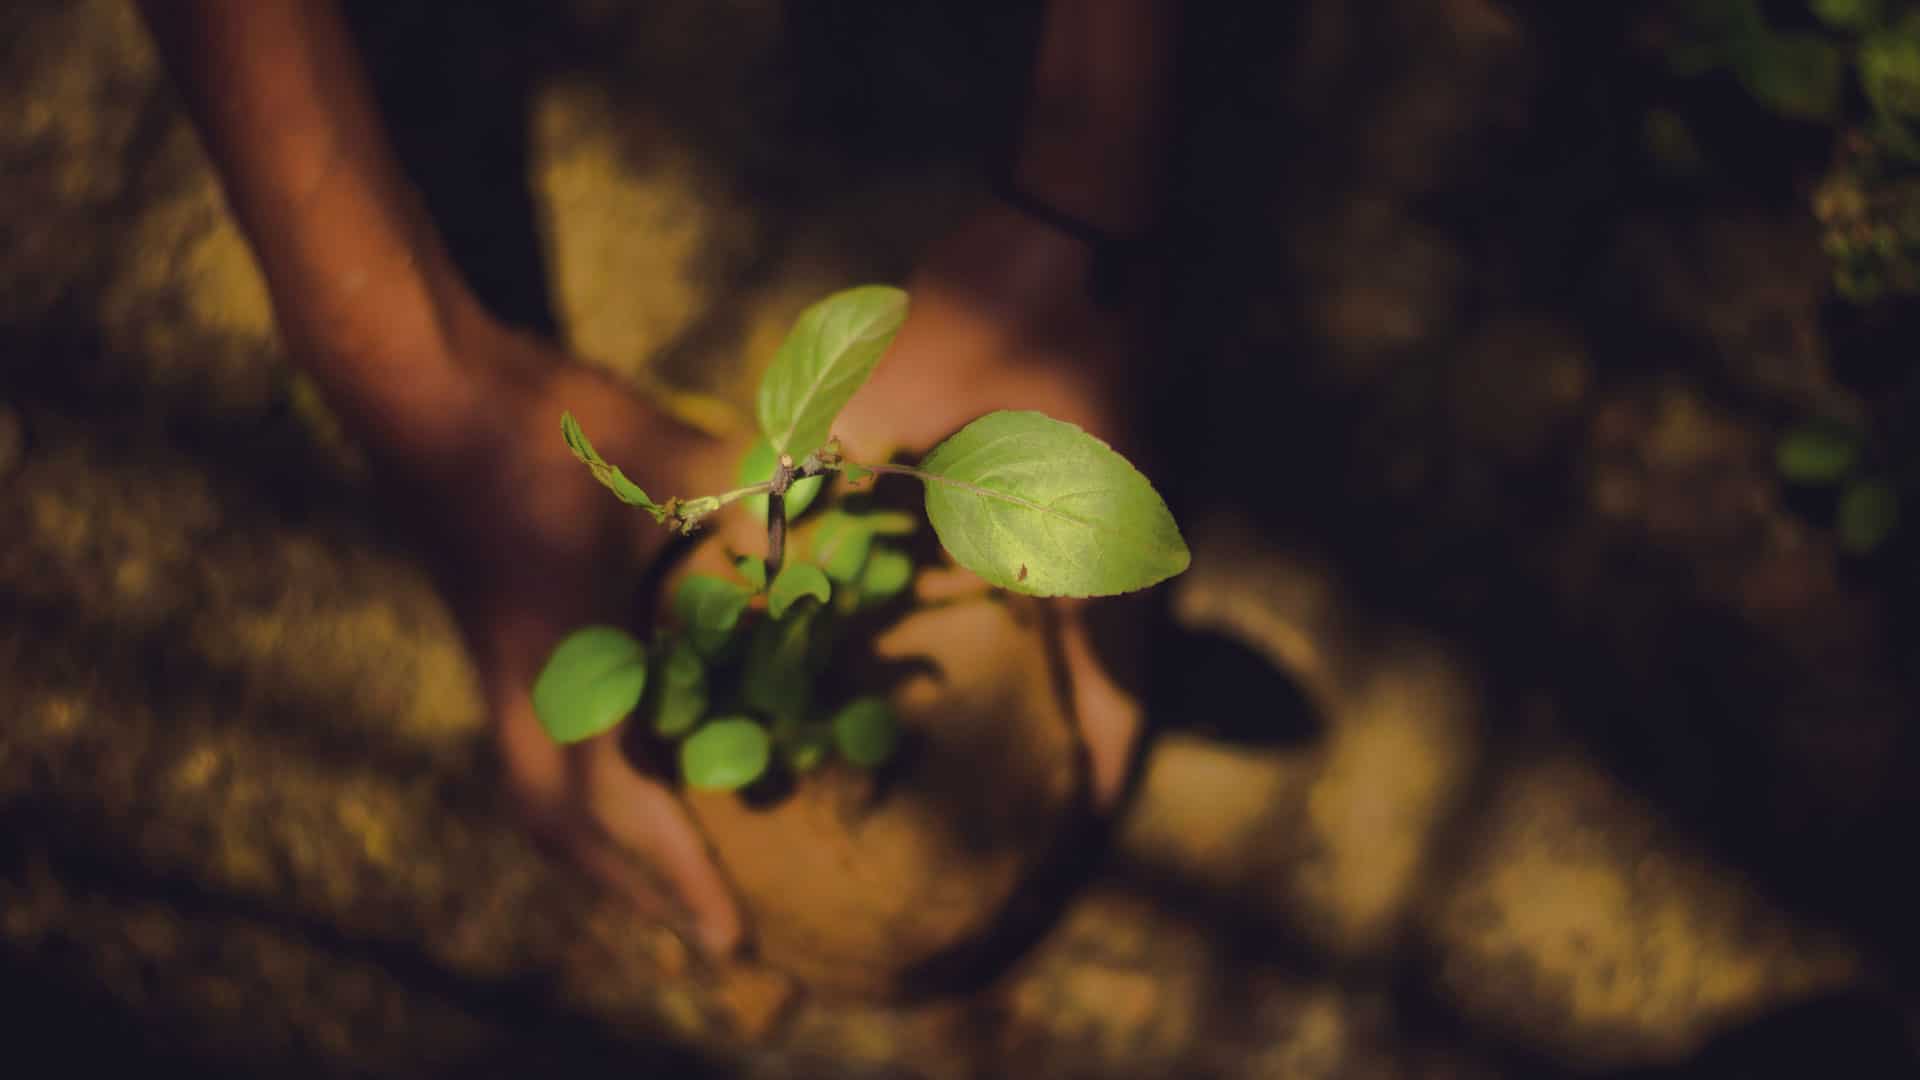 Pflanzen stehen für Wachstum und Hoffnung - auch in dieser schwierigen Zeit